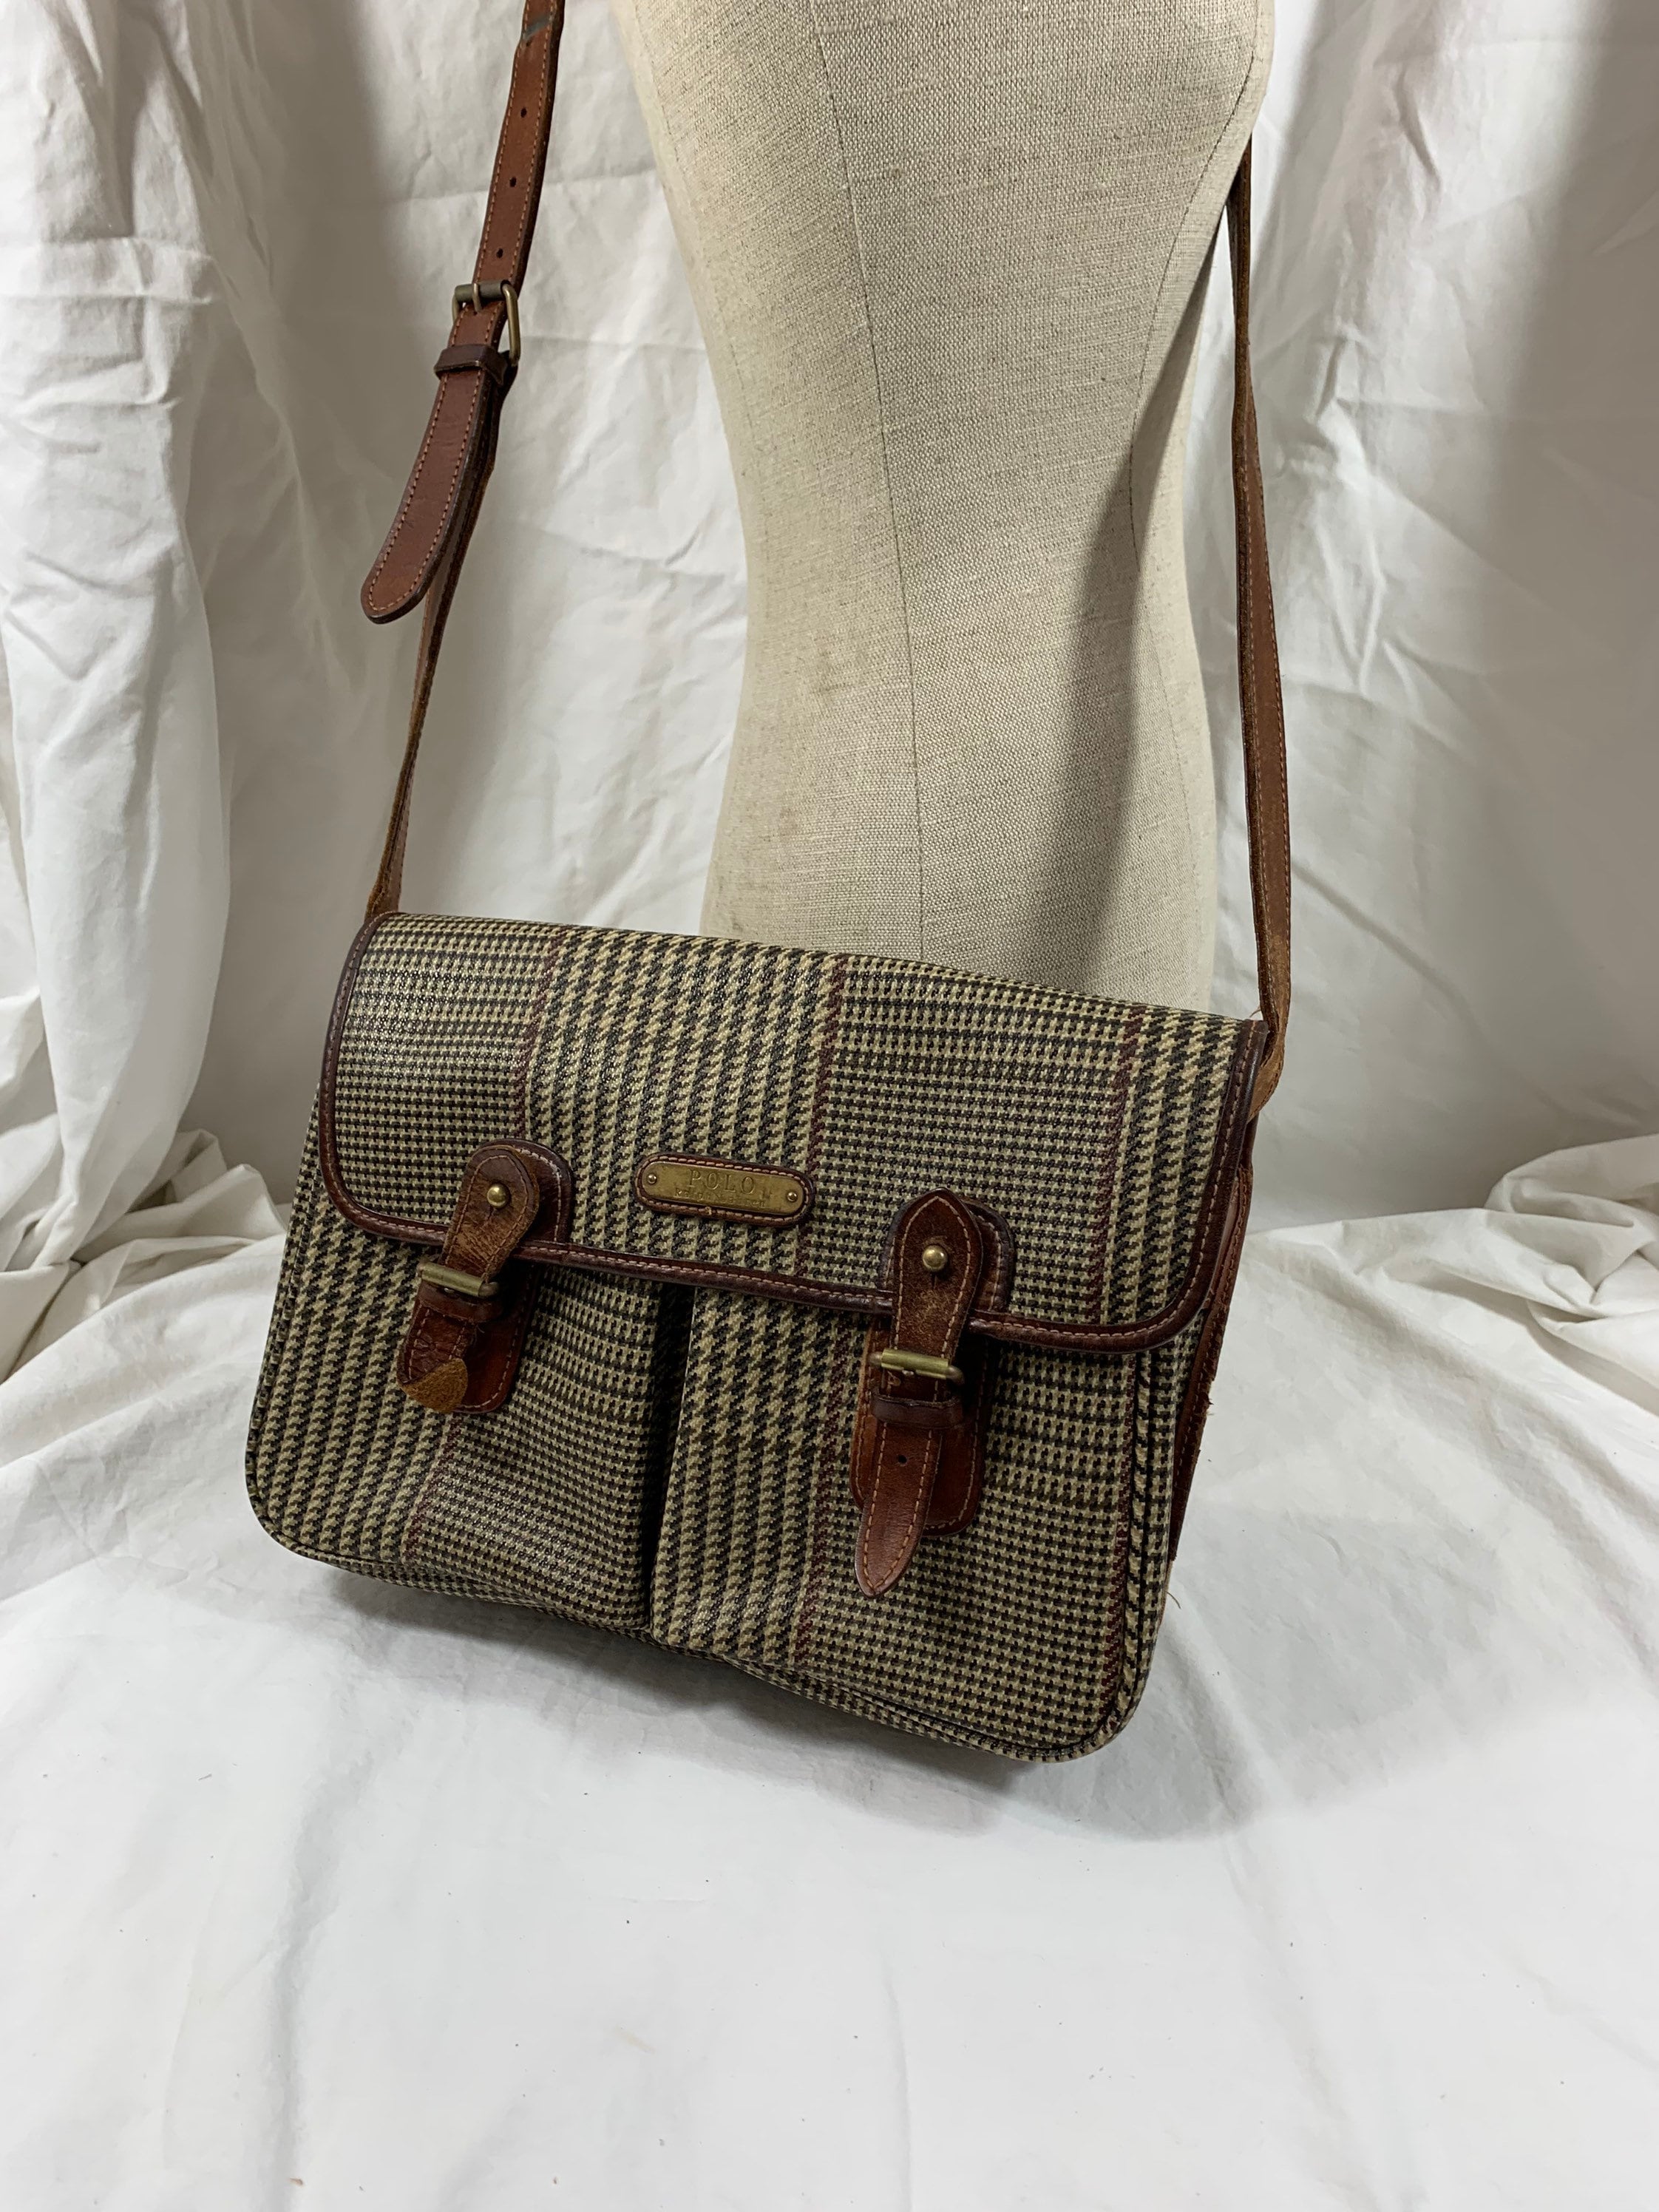 Polo Iconic Handbag for Sale Online | Polo SA